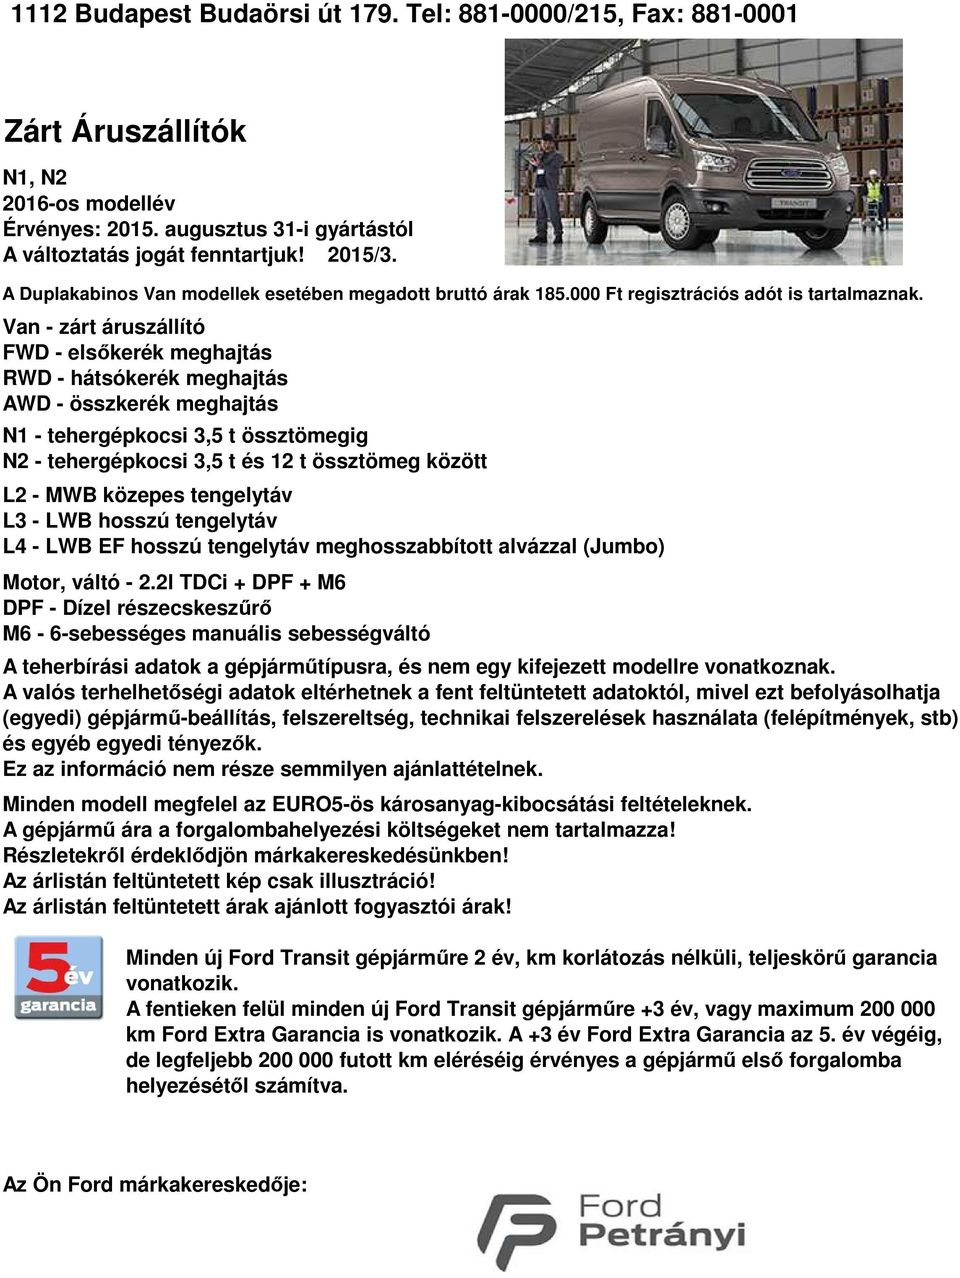 zárt áruszállító FWD elsőkerék meghajtás RWD hátsókerék meghajtás AWD összkerék meghajtás N1 tehergépkocsi 3,5 t össztömegig N2 tehergépkocsi 3,5 t és 12 t össztömeg között L2 MWB közepes tengelytáv